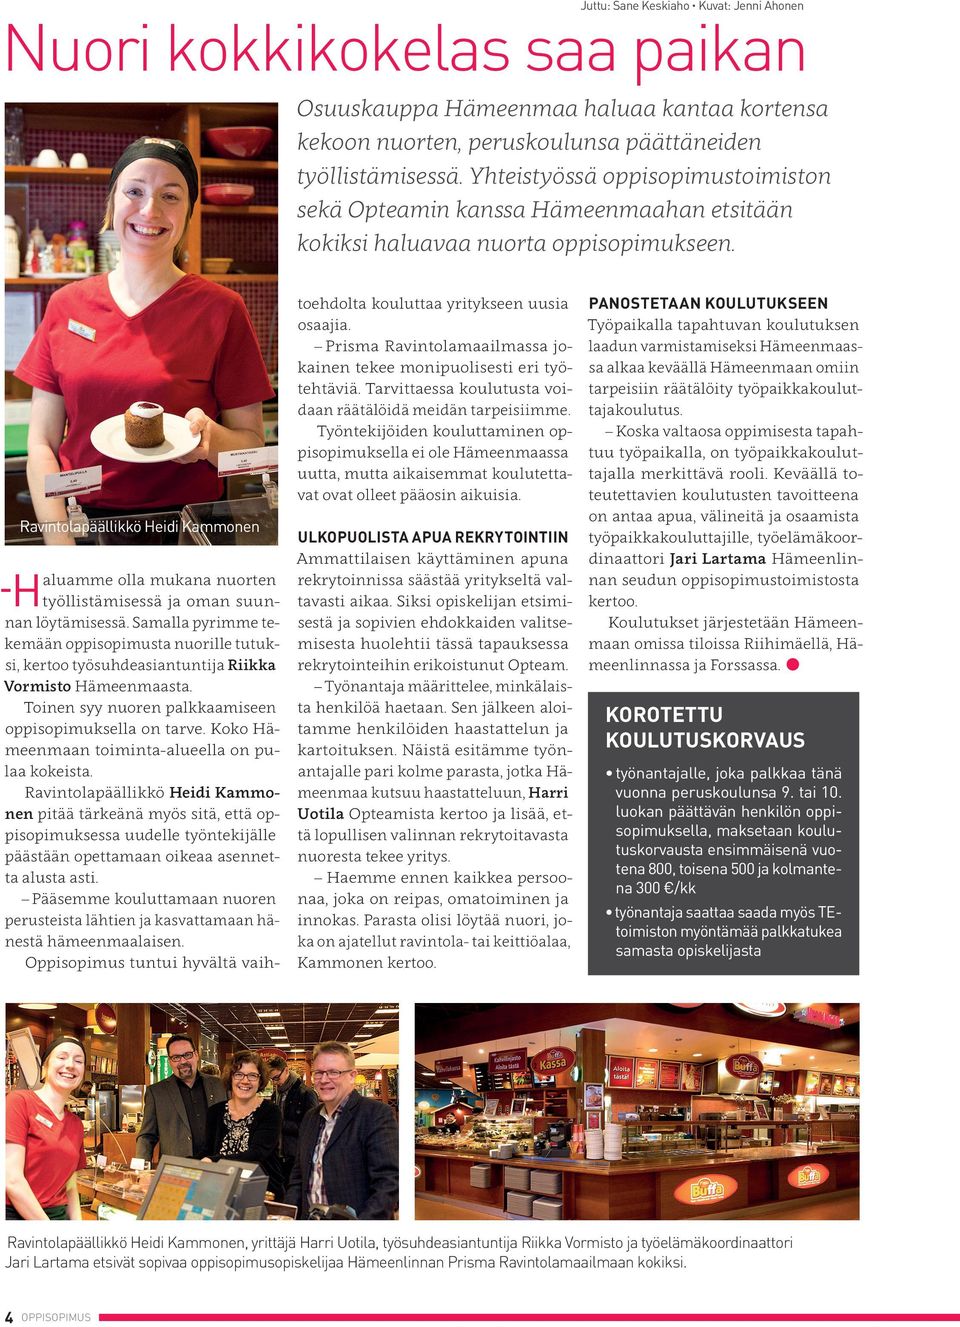 Ravintolapäällikkö Heidi Kammonen H aluamme olla mukana nuorten työllistämisessä ja oman suunnan löytämisessä.